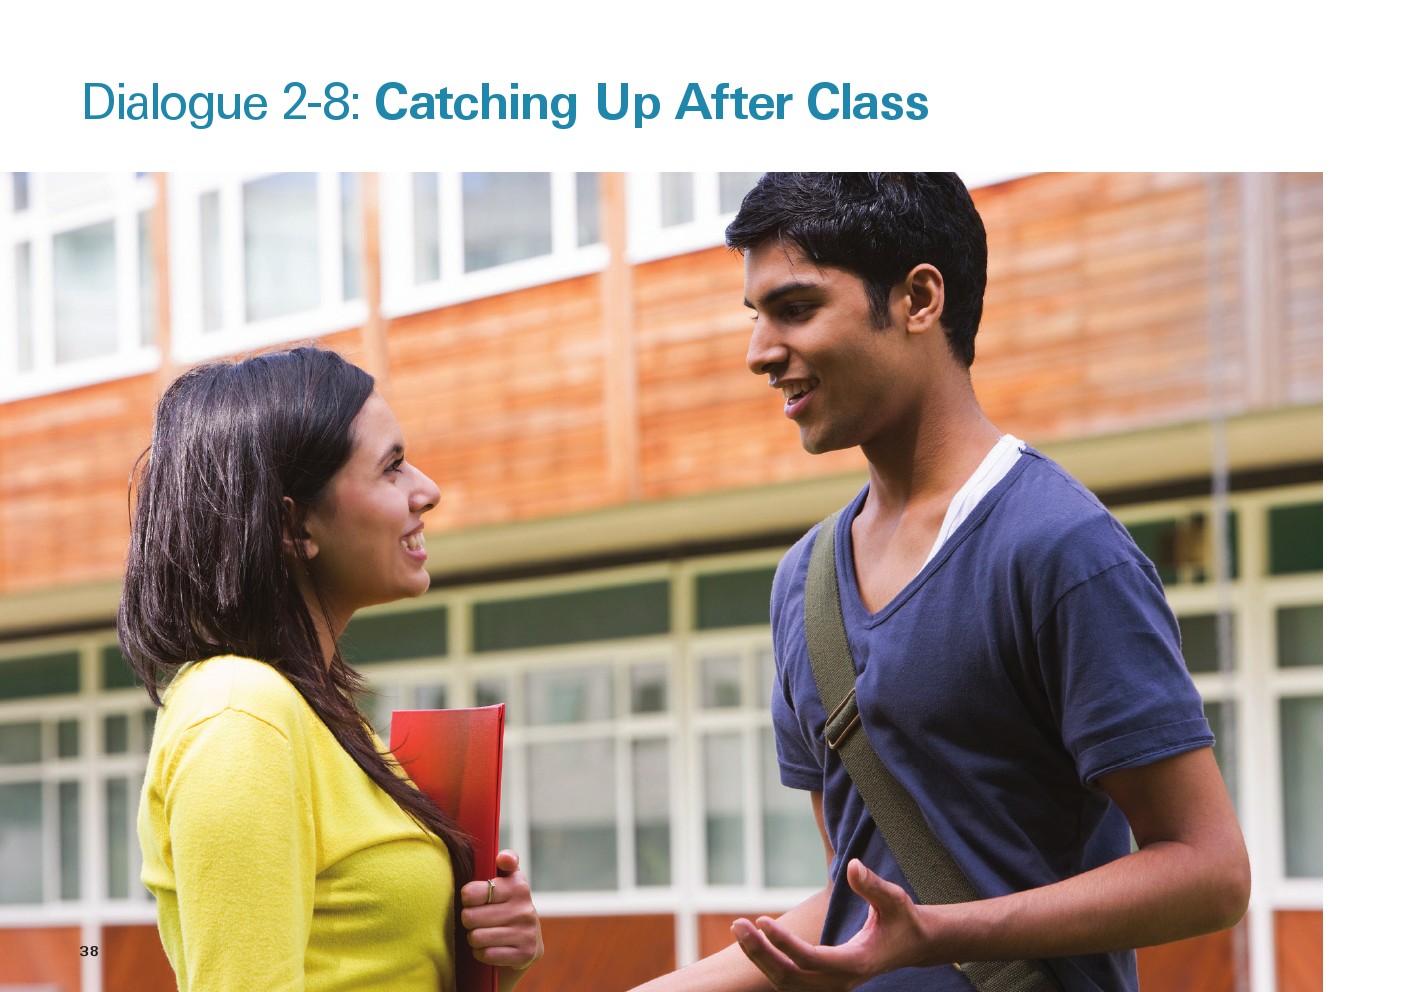 یادگیری انگلیسی آمریکایی-مکالمات و دیالوگ های روزمره- ممکالمه 8-2: گفت و گو بعد از کلاس(Dialogue 2-8: Catching Up After Class)